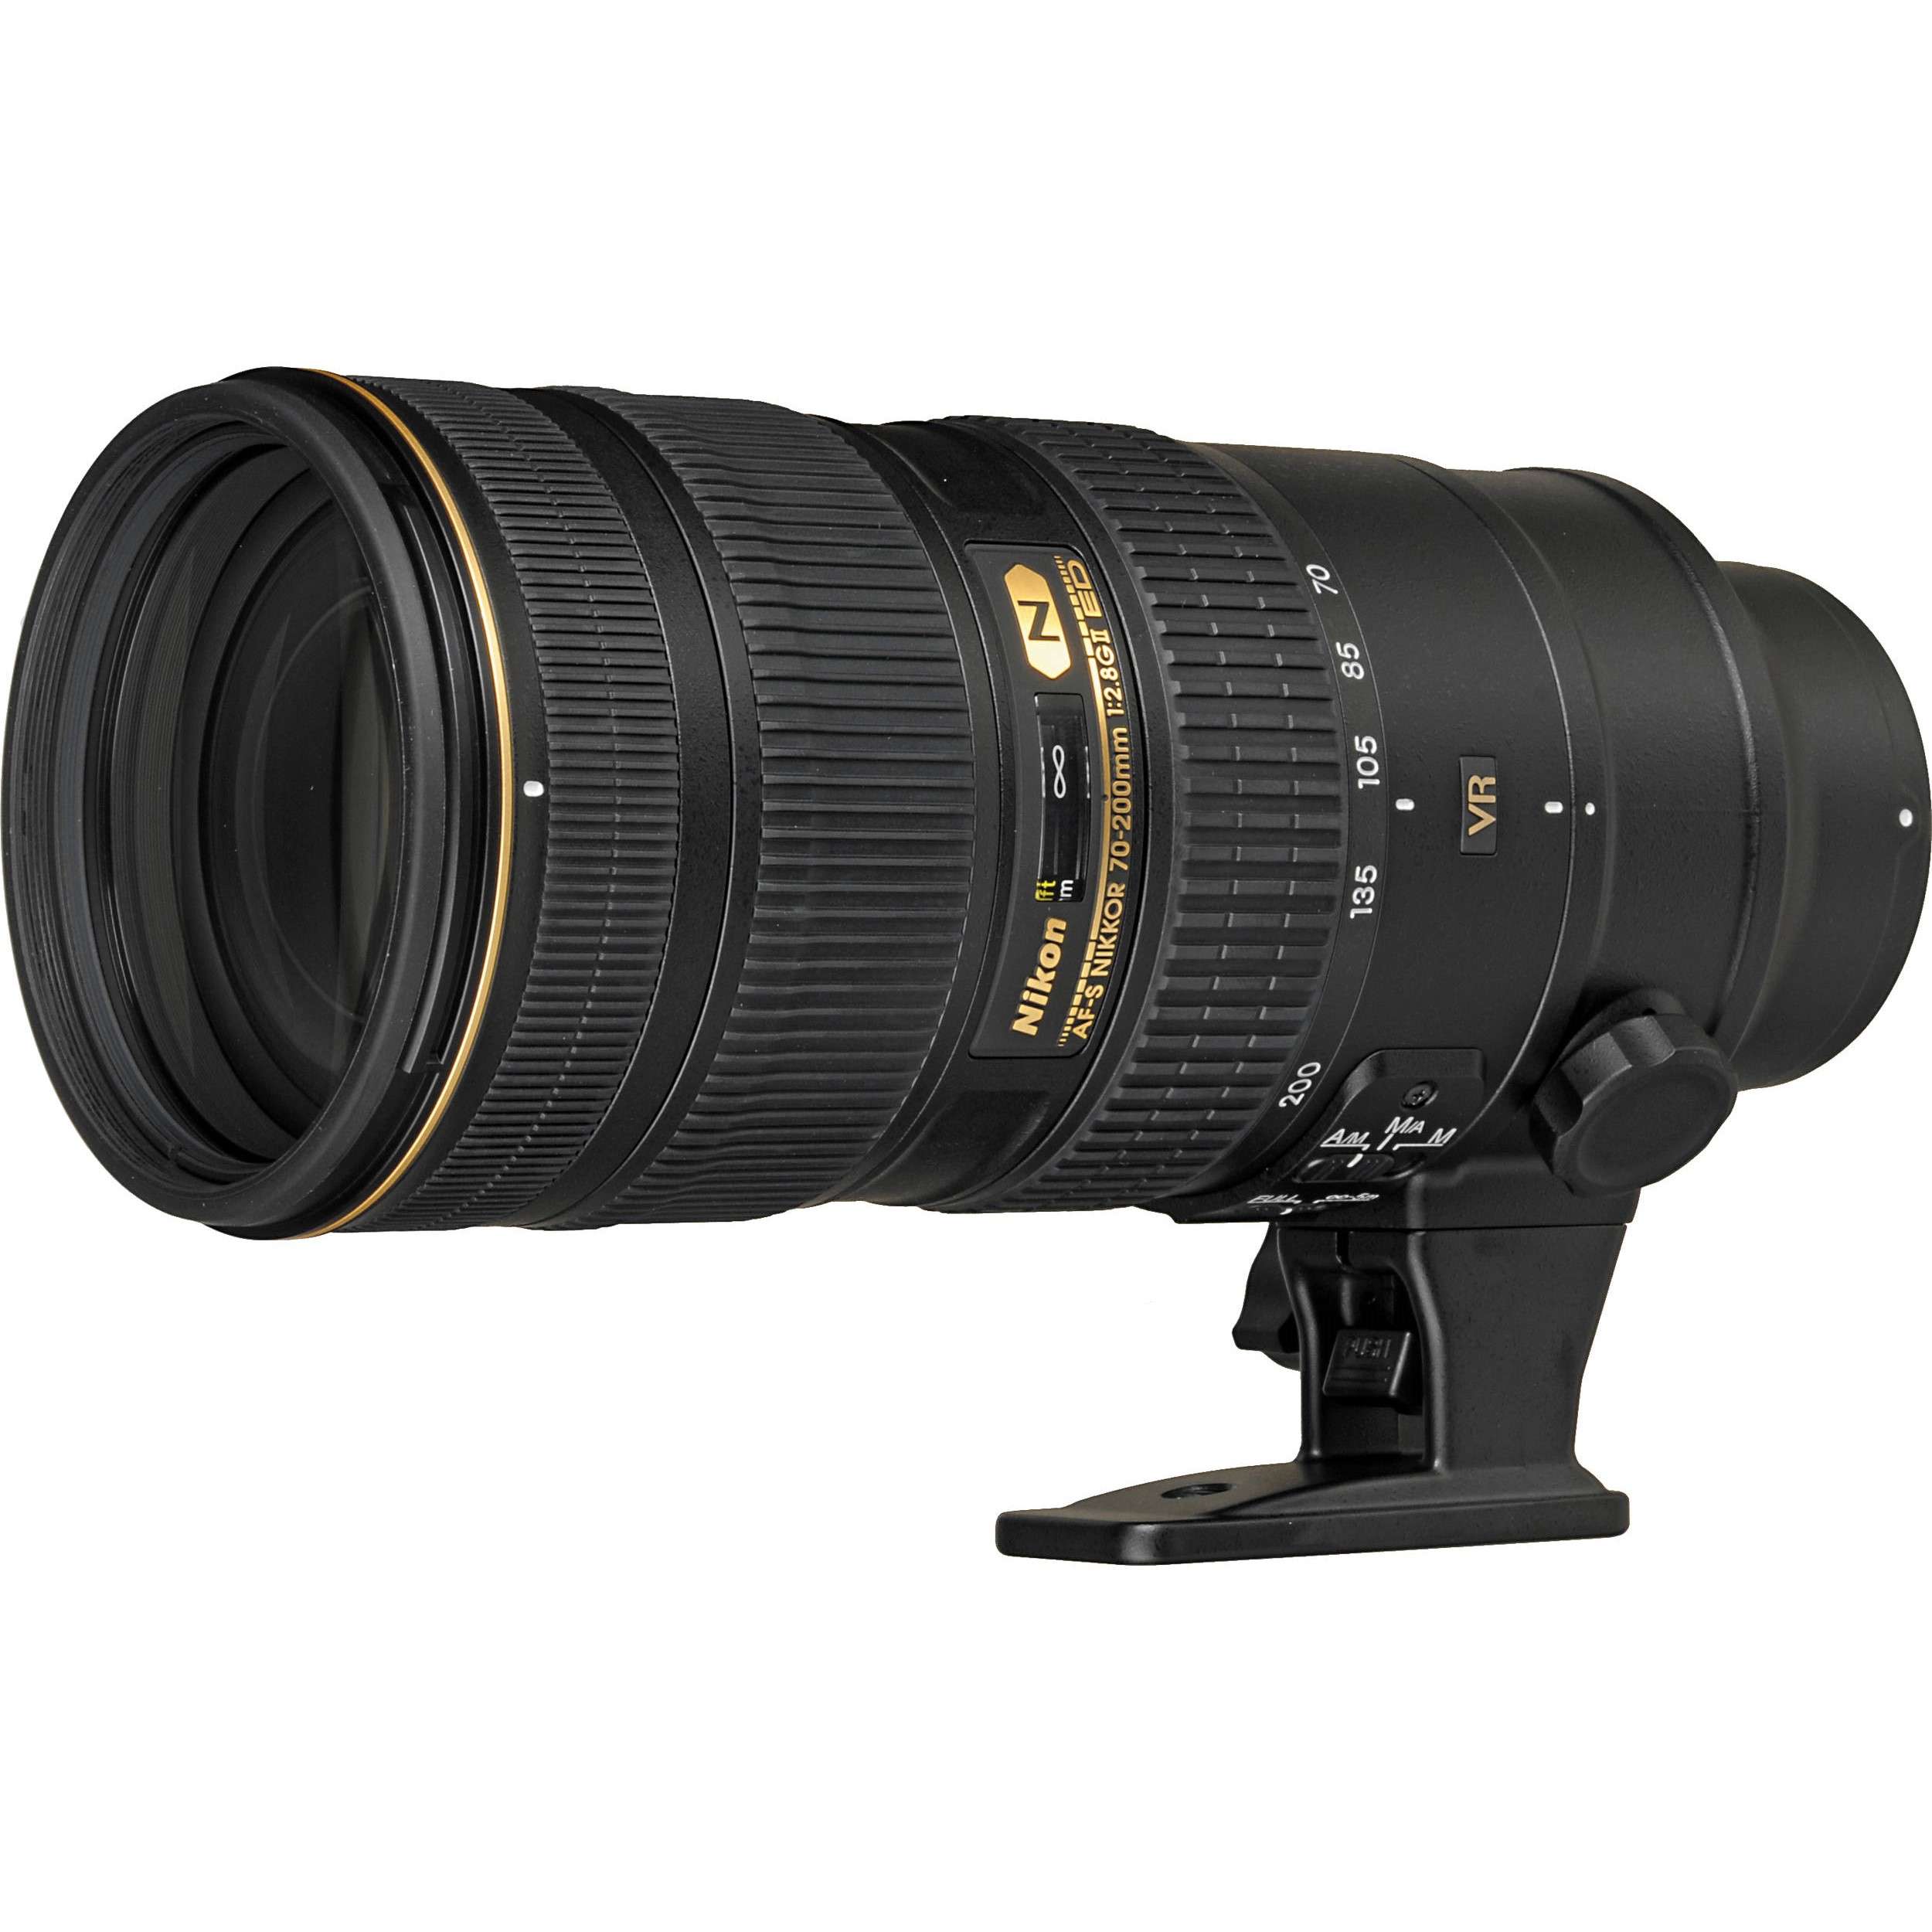 Hot Deal – Refurbished AF-S NIKKOR 70-200mm f/2.8G ED VR II Lens for $1,699 at Adorama !